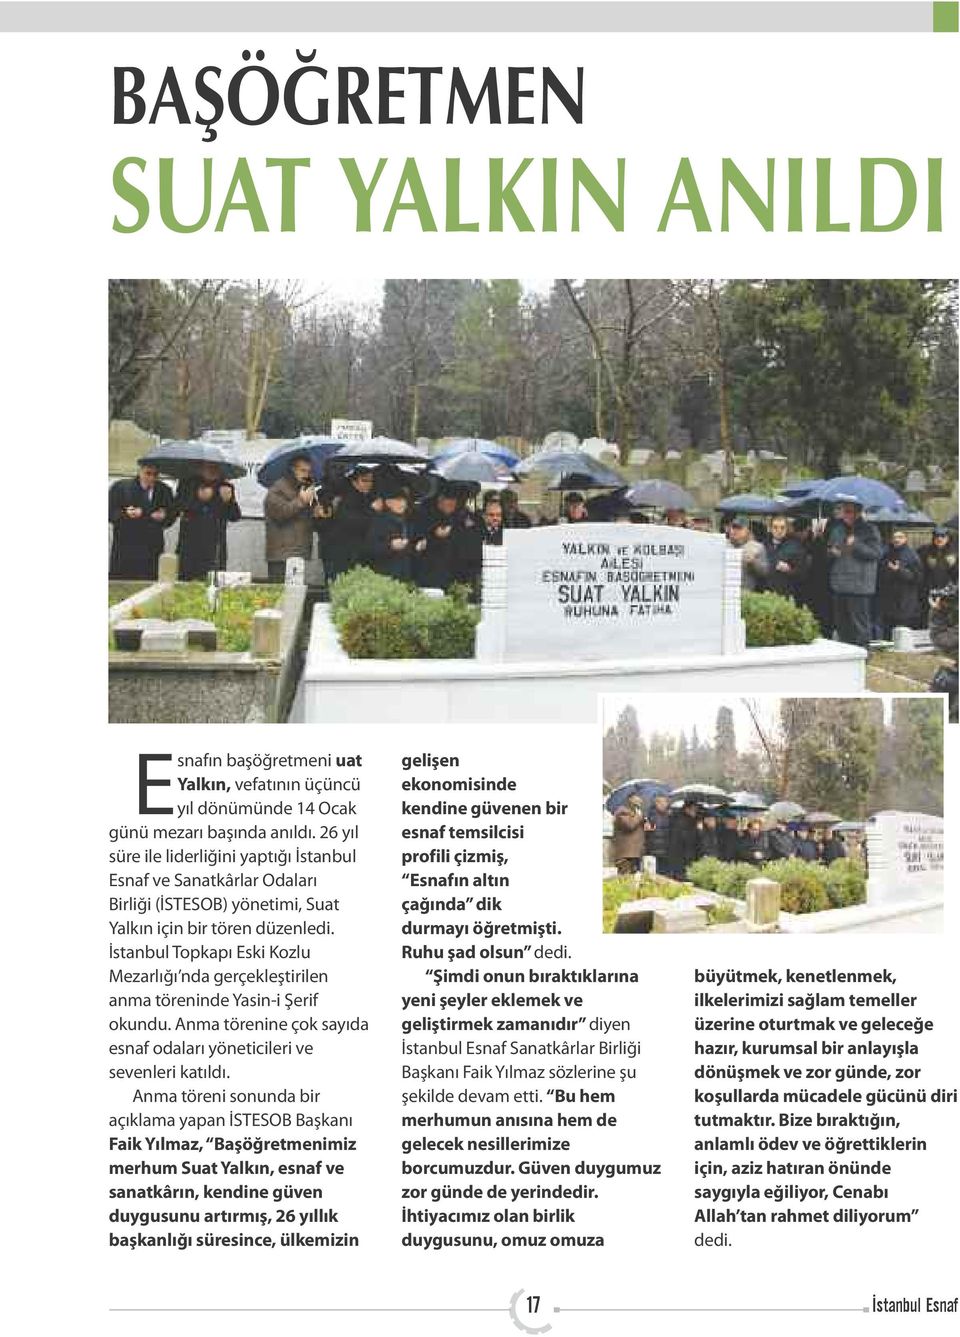 İstanbul Topkapı Eski Kozlu Mezarlığı nda gerçekleştirilen anma töreninde Yasin-i Şerif okundu. Anma törenine çok sayıda esnaf odaları yöneticileri ve sevenleri katıldı.